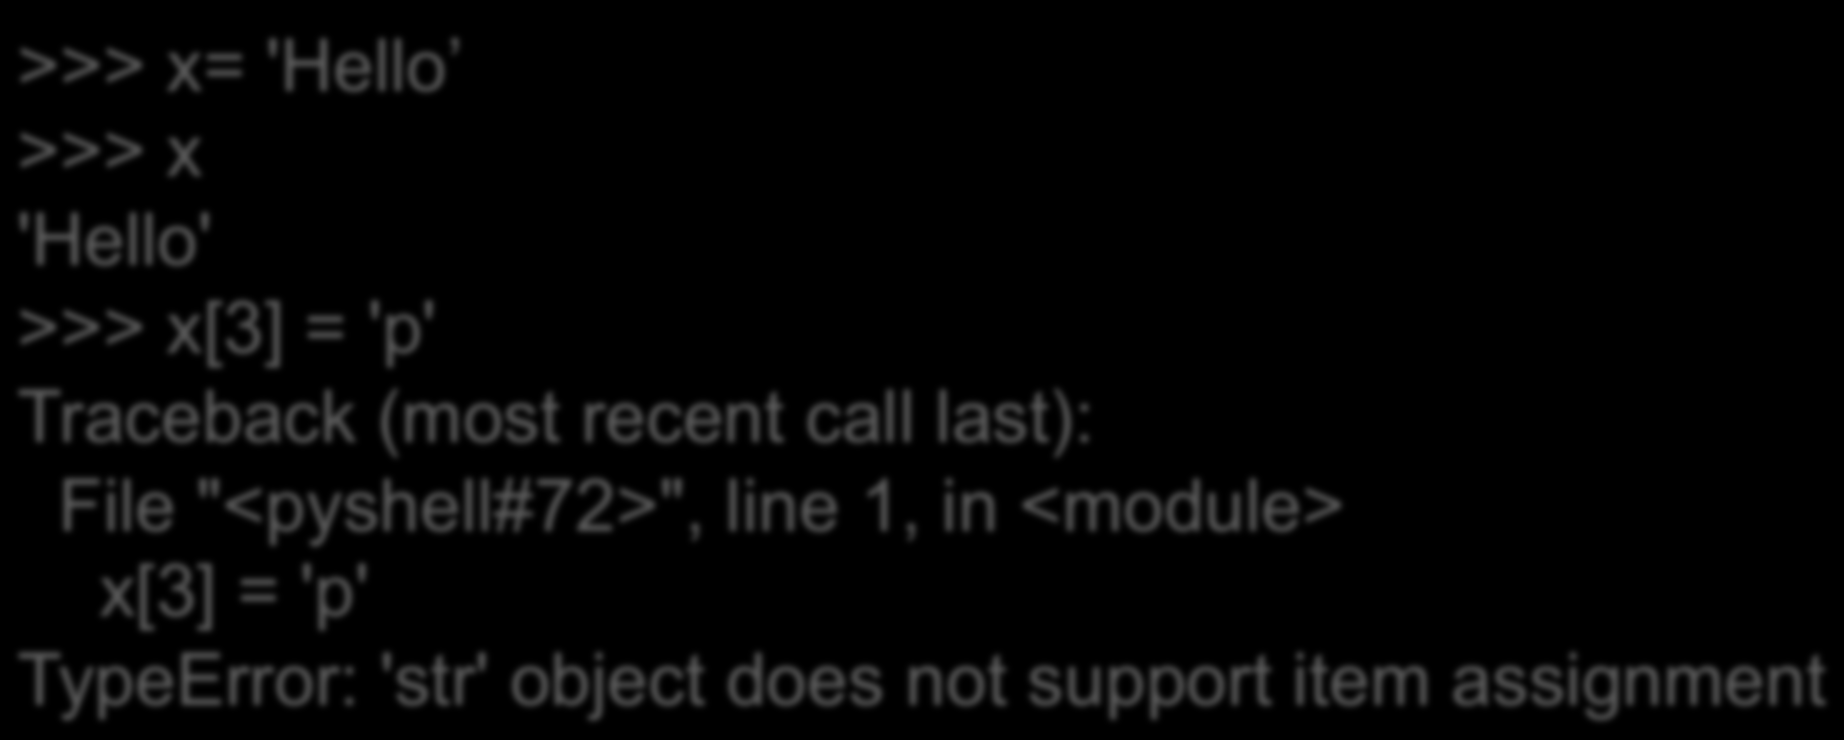 Αλλά... >>> x= 'Hello >>> x 'Hello' >>> x[3] = 'p' Traceback (most recent call last): File "<pyshell#72>", line 1, in <module> x[3] =